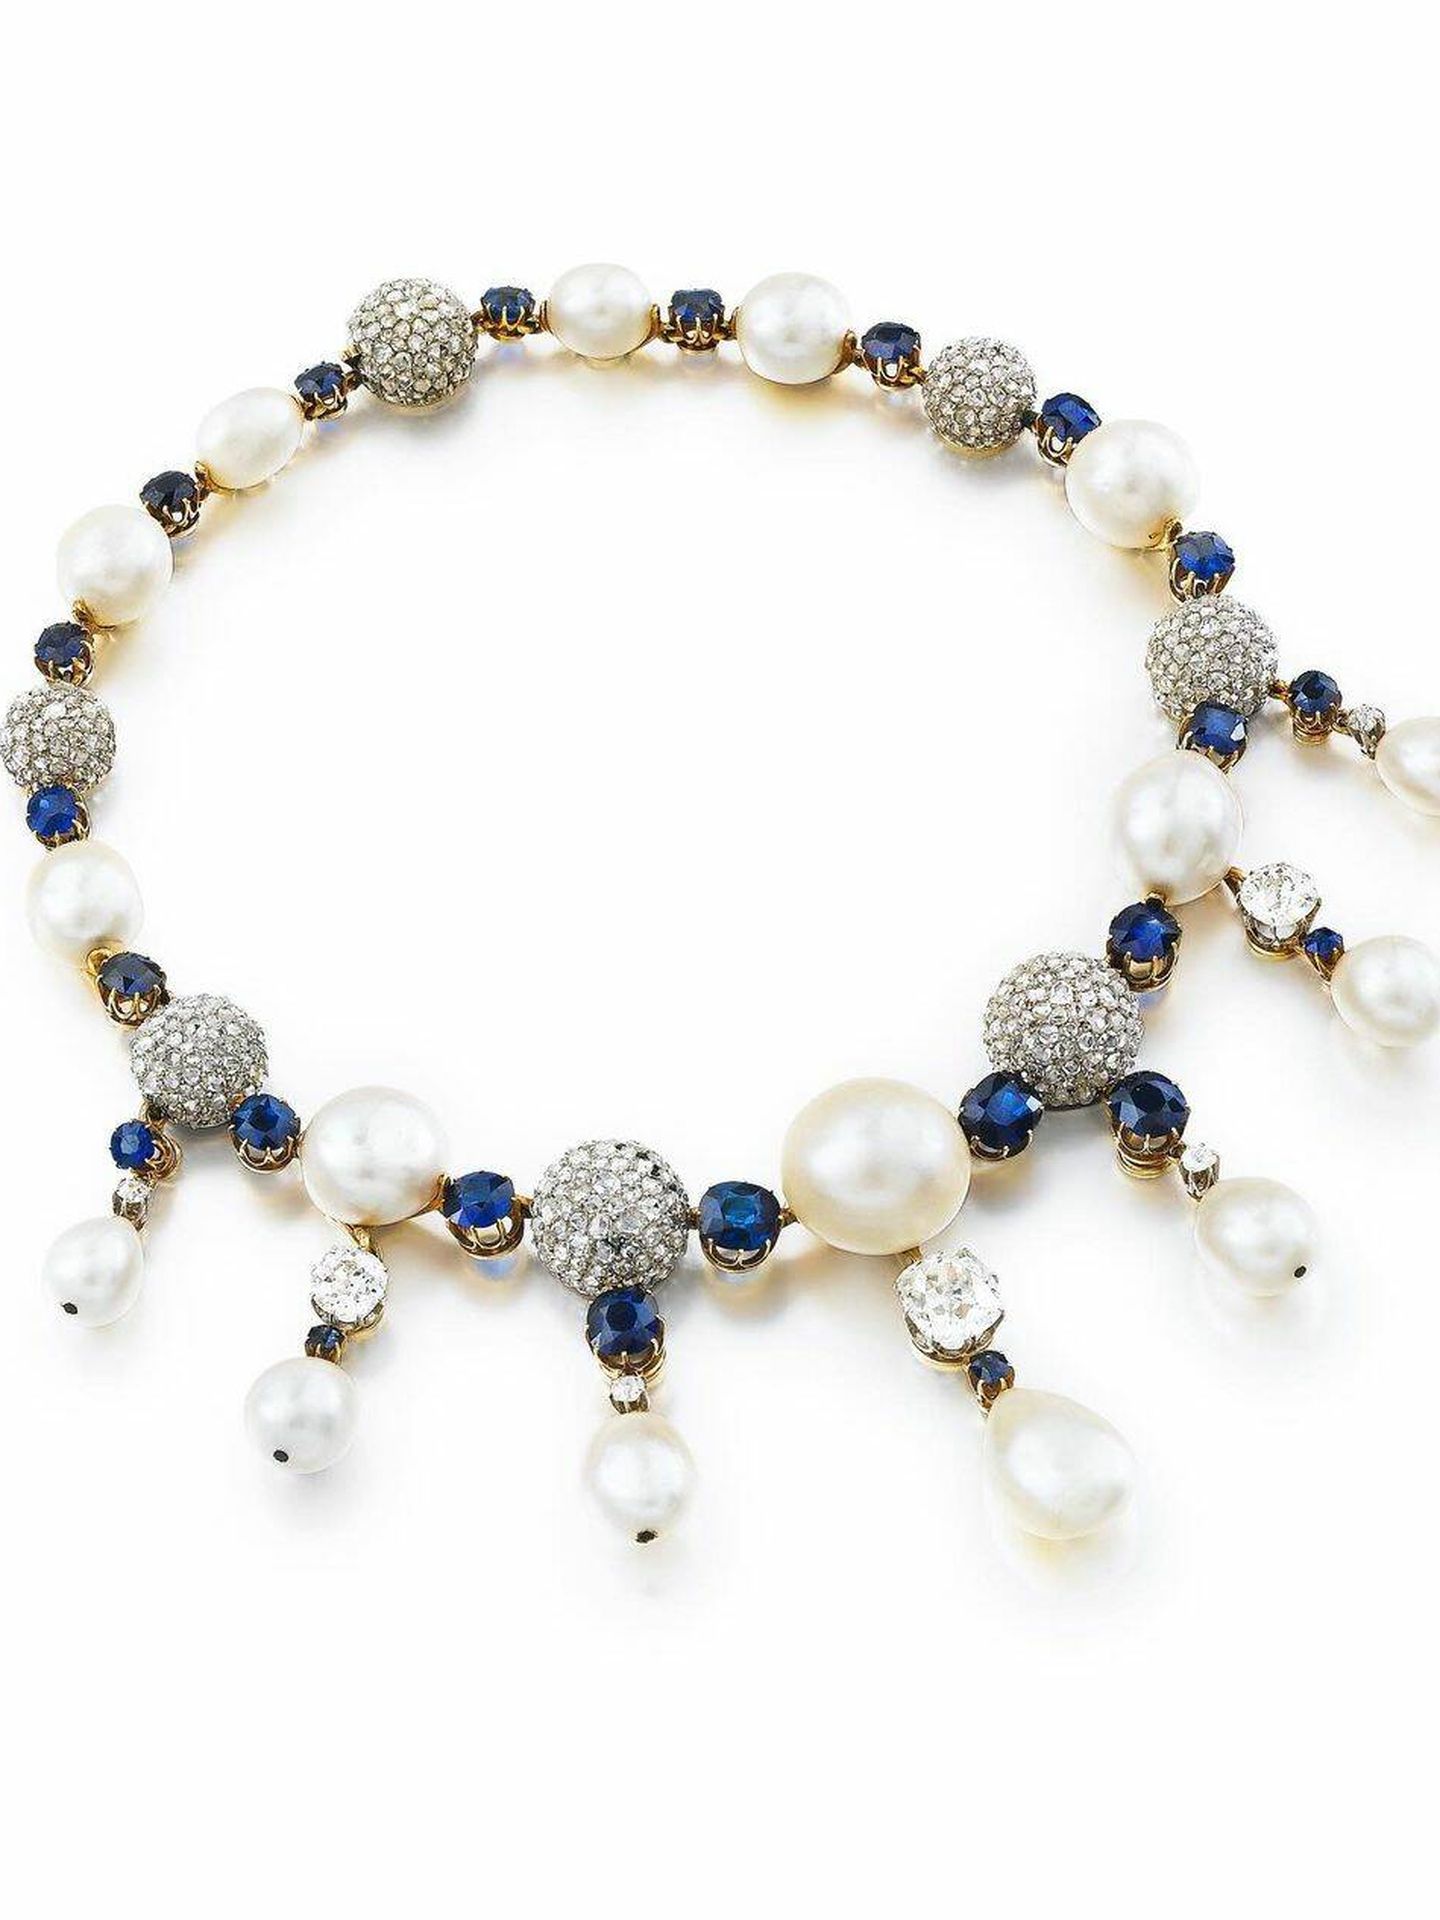 El collar de perlas, zafiros y diamantes de la reina Fabiola. (Sotheby's)